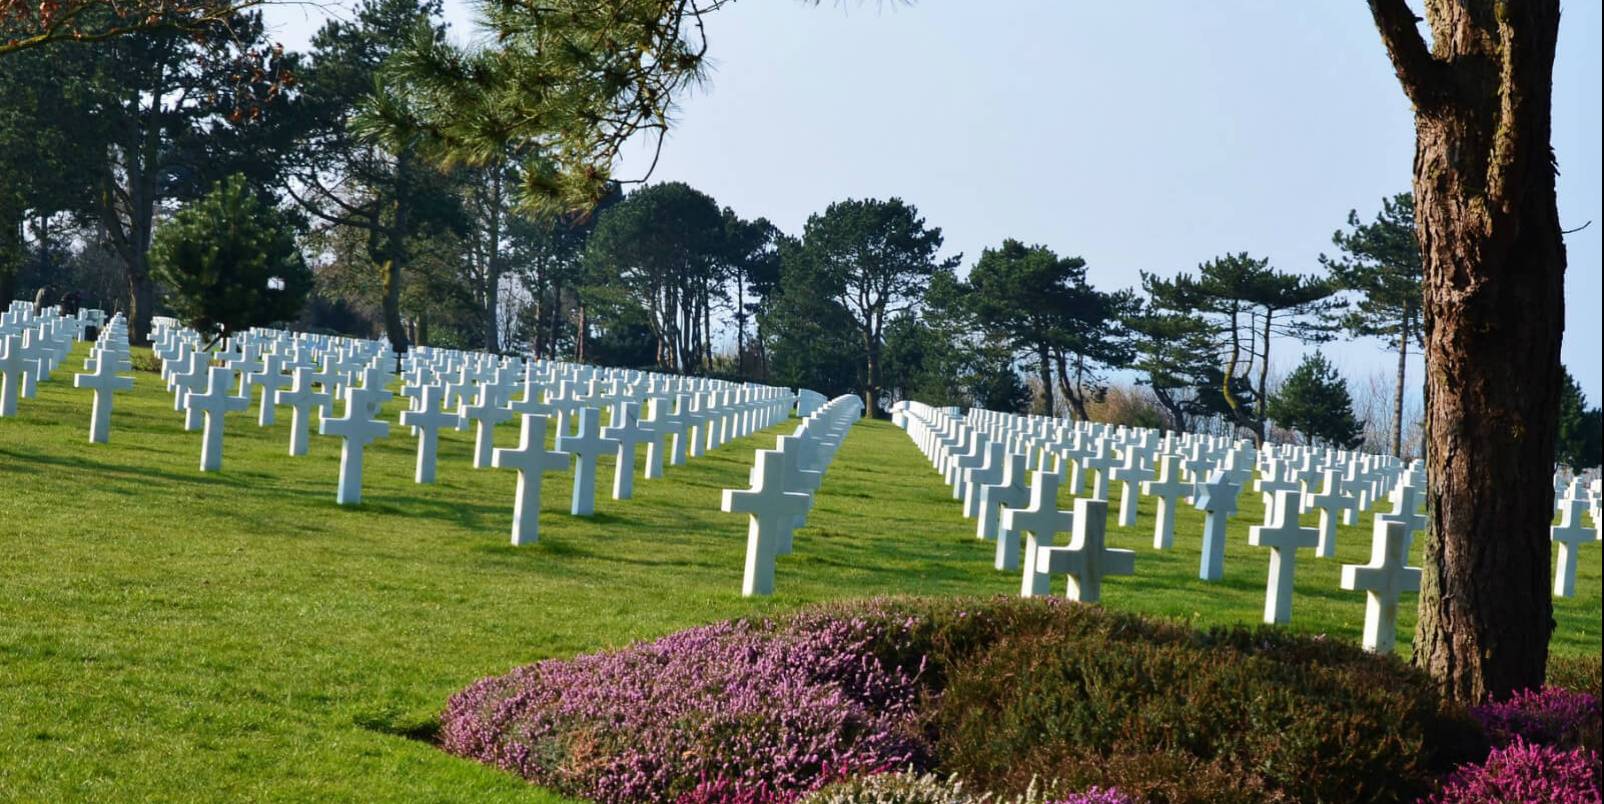 Le cimetière américain de Colleville-sur-mer (photo recadrée)